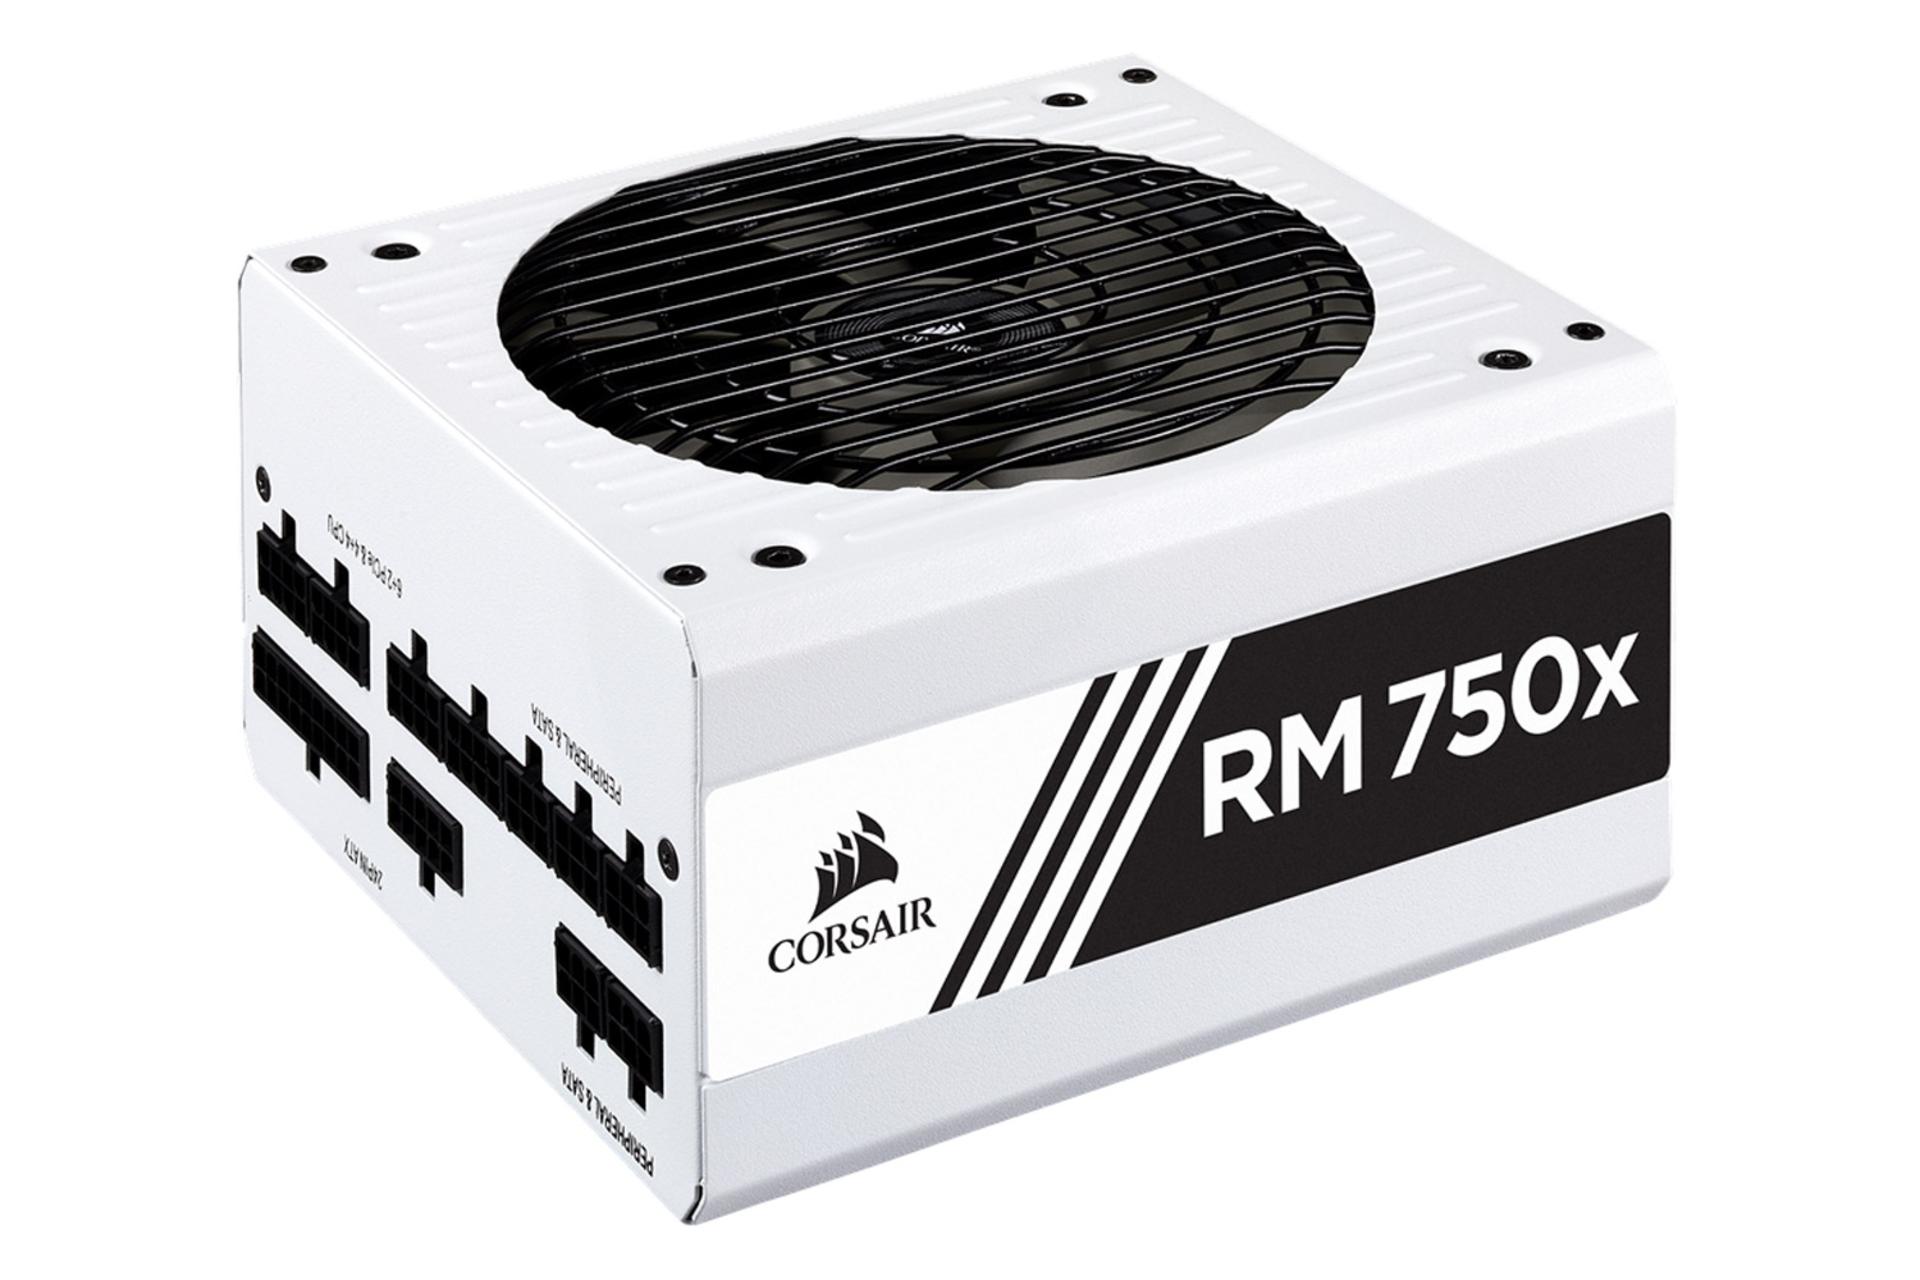 طراحی کورسیر RM750x CP-9020187 با توان 750 وات